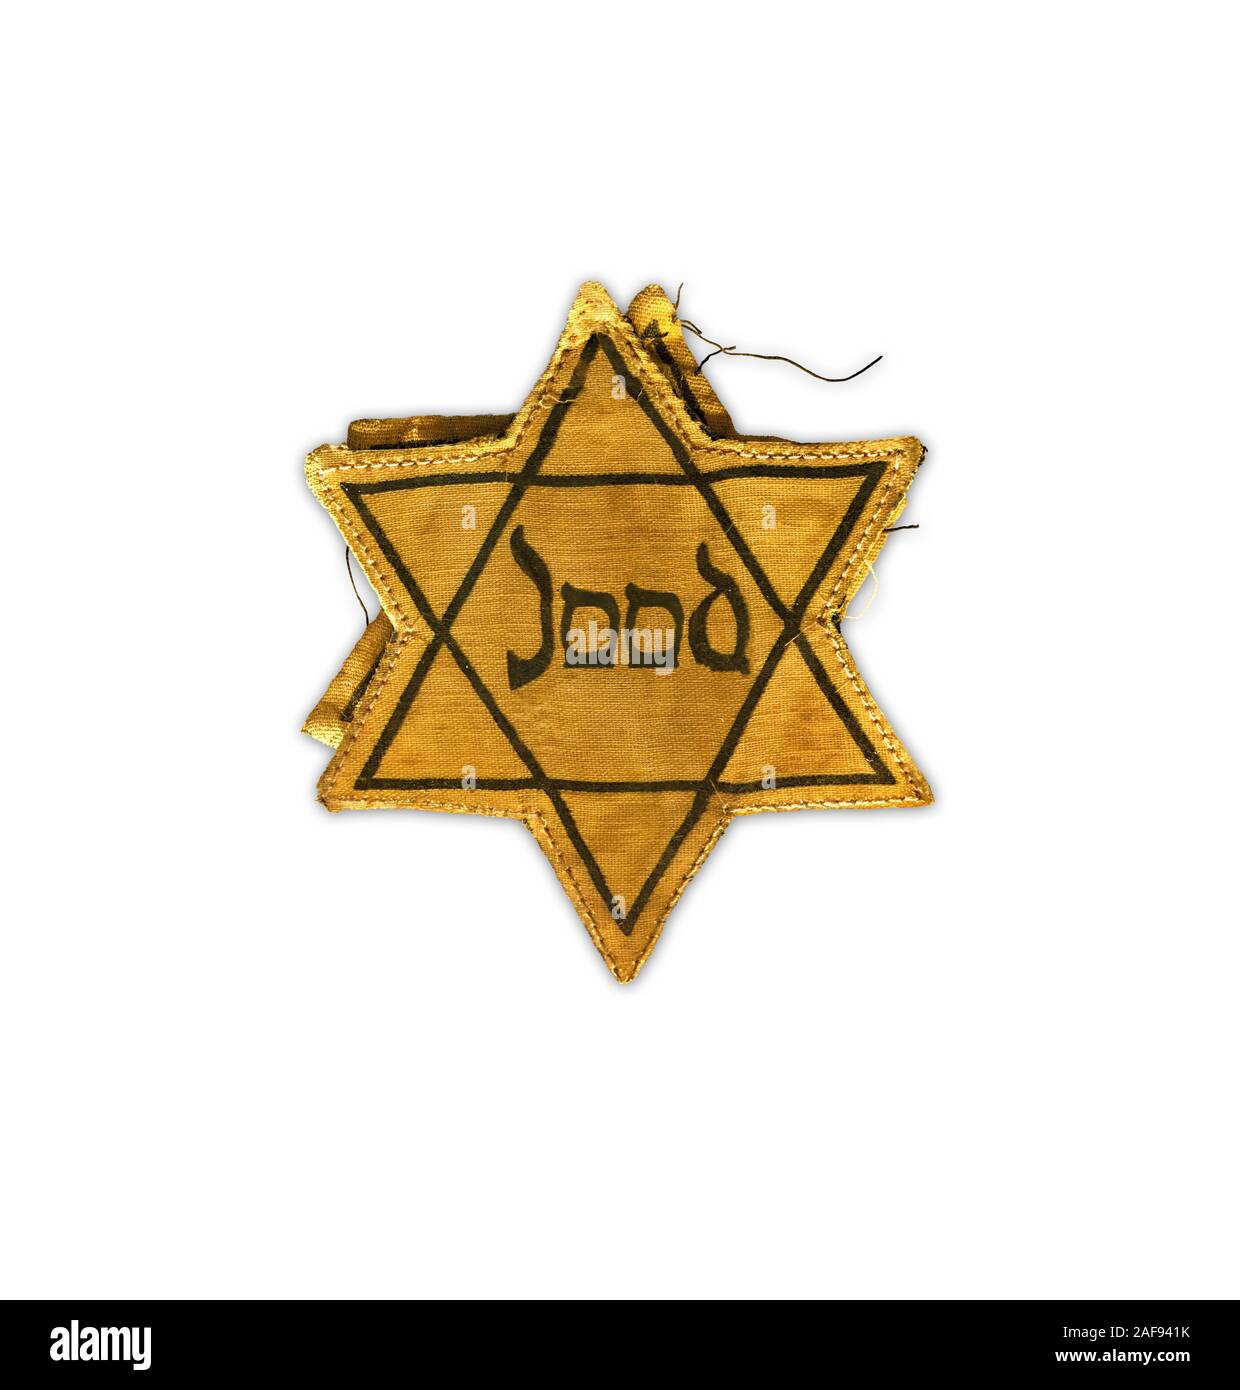 Hollocaust Tag der Erinnerung, gelber Stern von David, dass Jutch Juden gezwungen waren, zu tragen. Jood bedeutet Jude in der niederländischen Sprache. Stockfoto